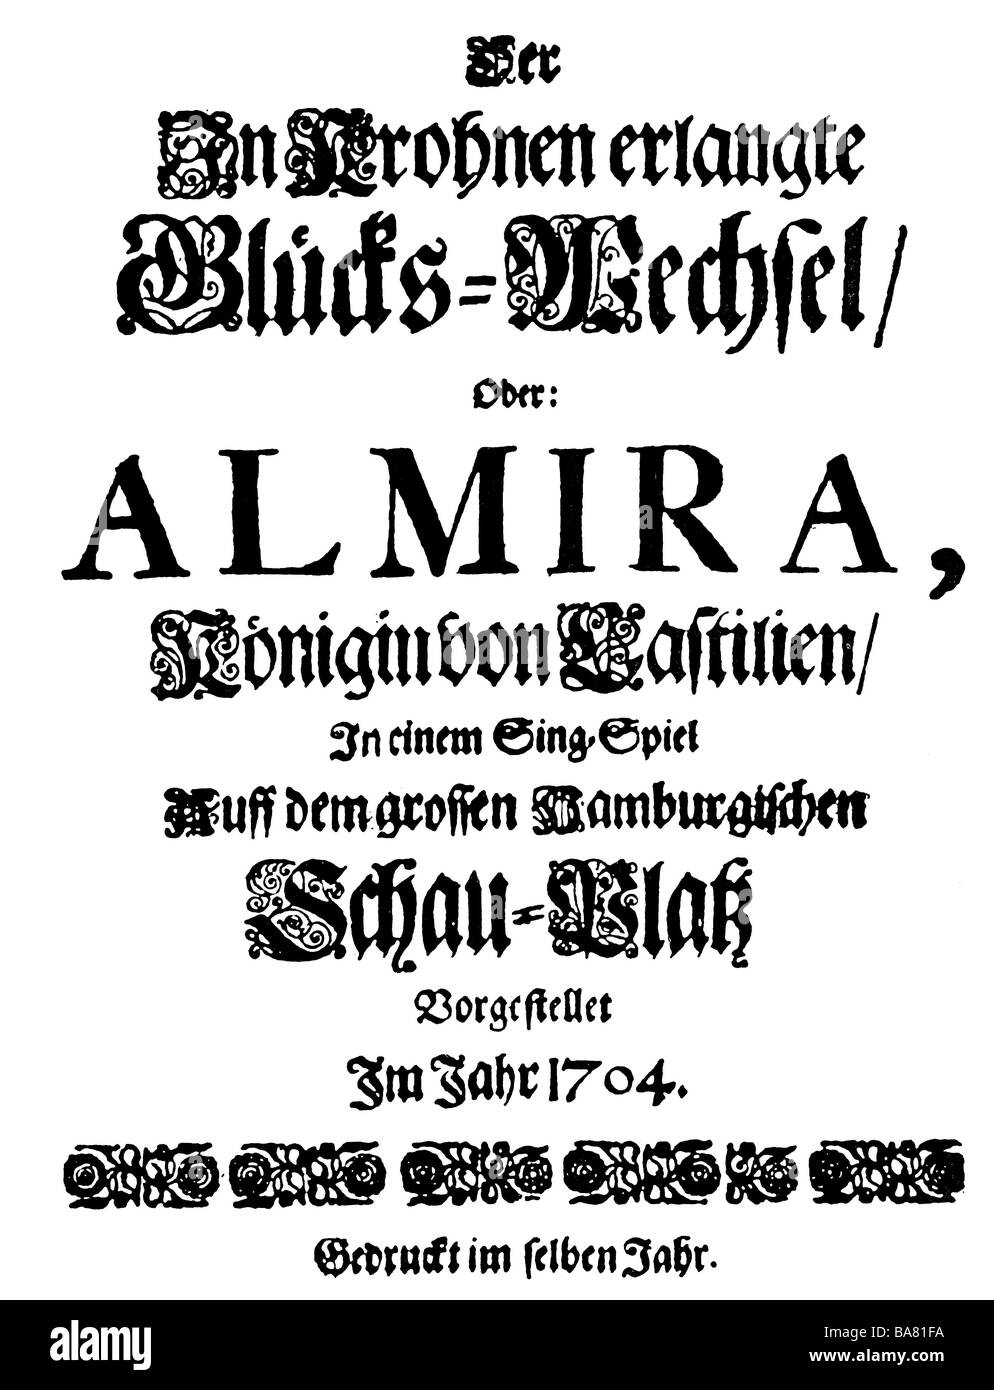 Händel, George Frederic, 23.2.1685 - 14.4.1759, deutscher Komponist, Werke, Oper "Almira", Drehbuch, Titel, Hamburg, 1704, Stockfoto